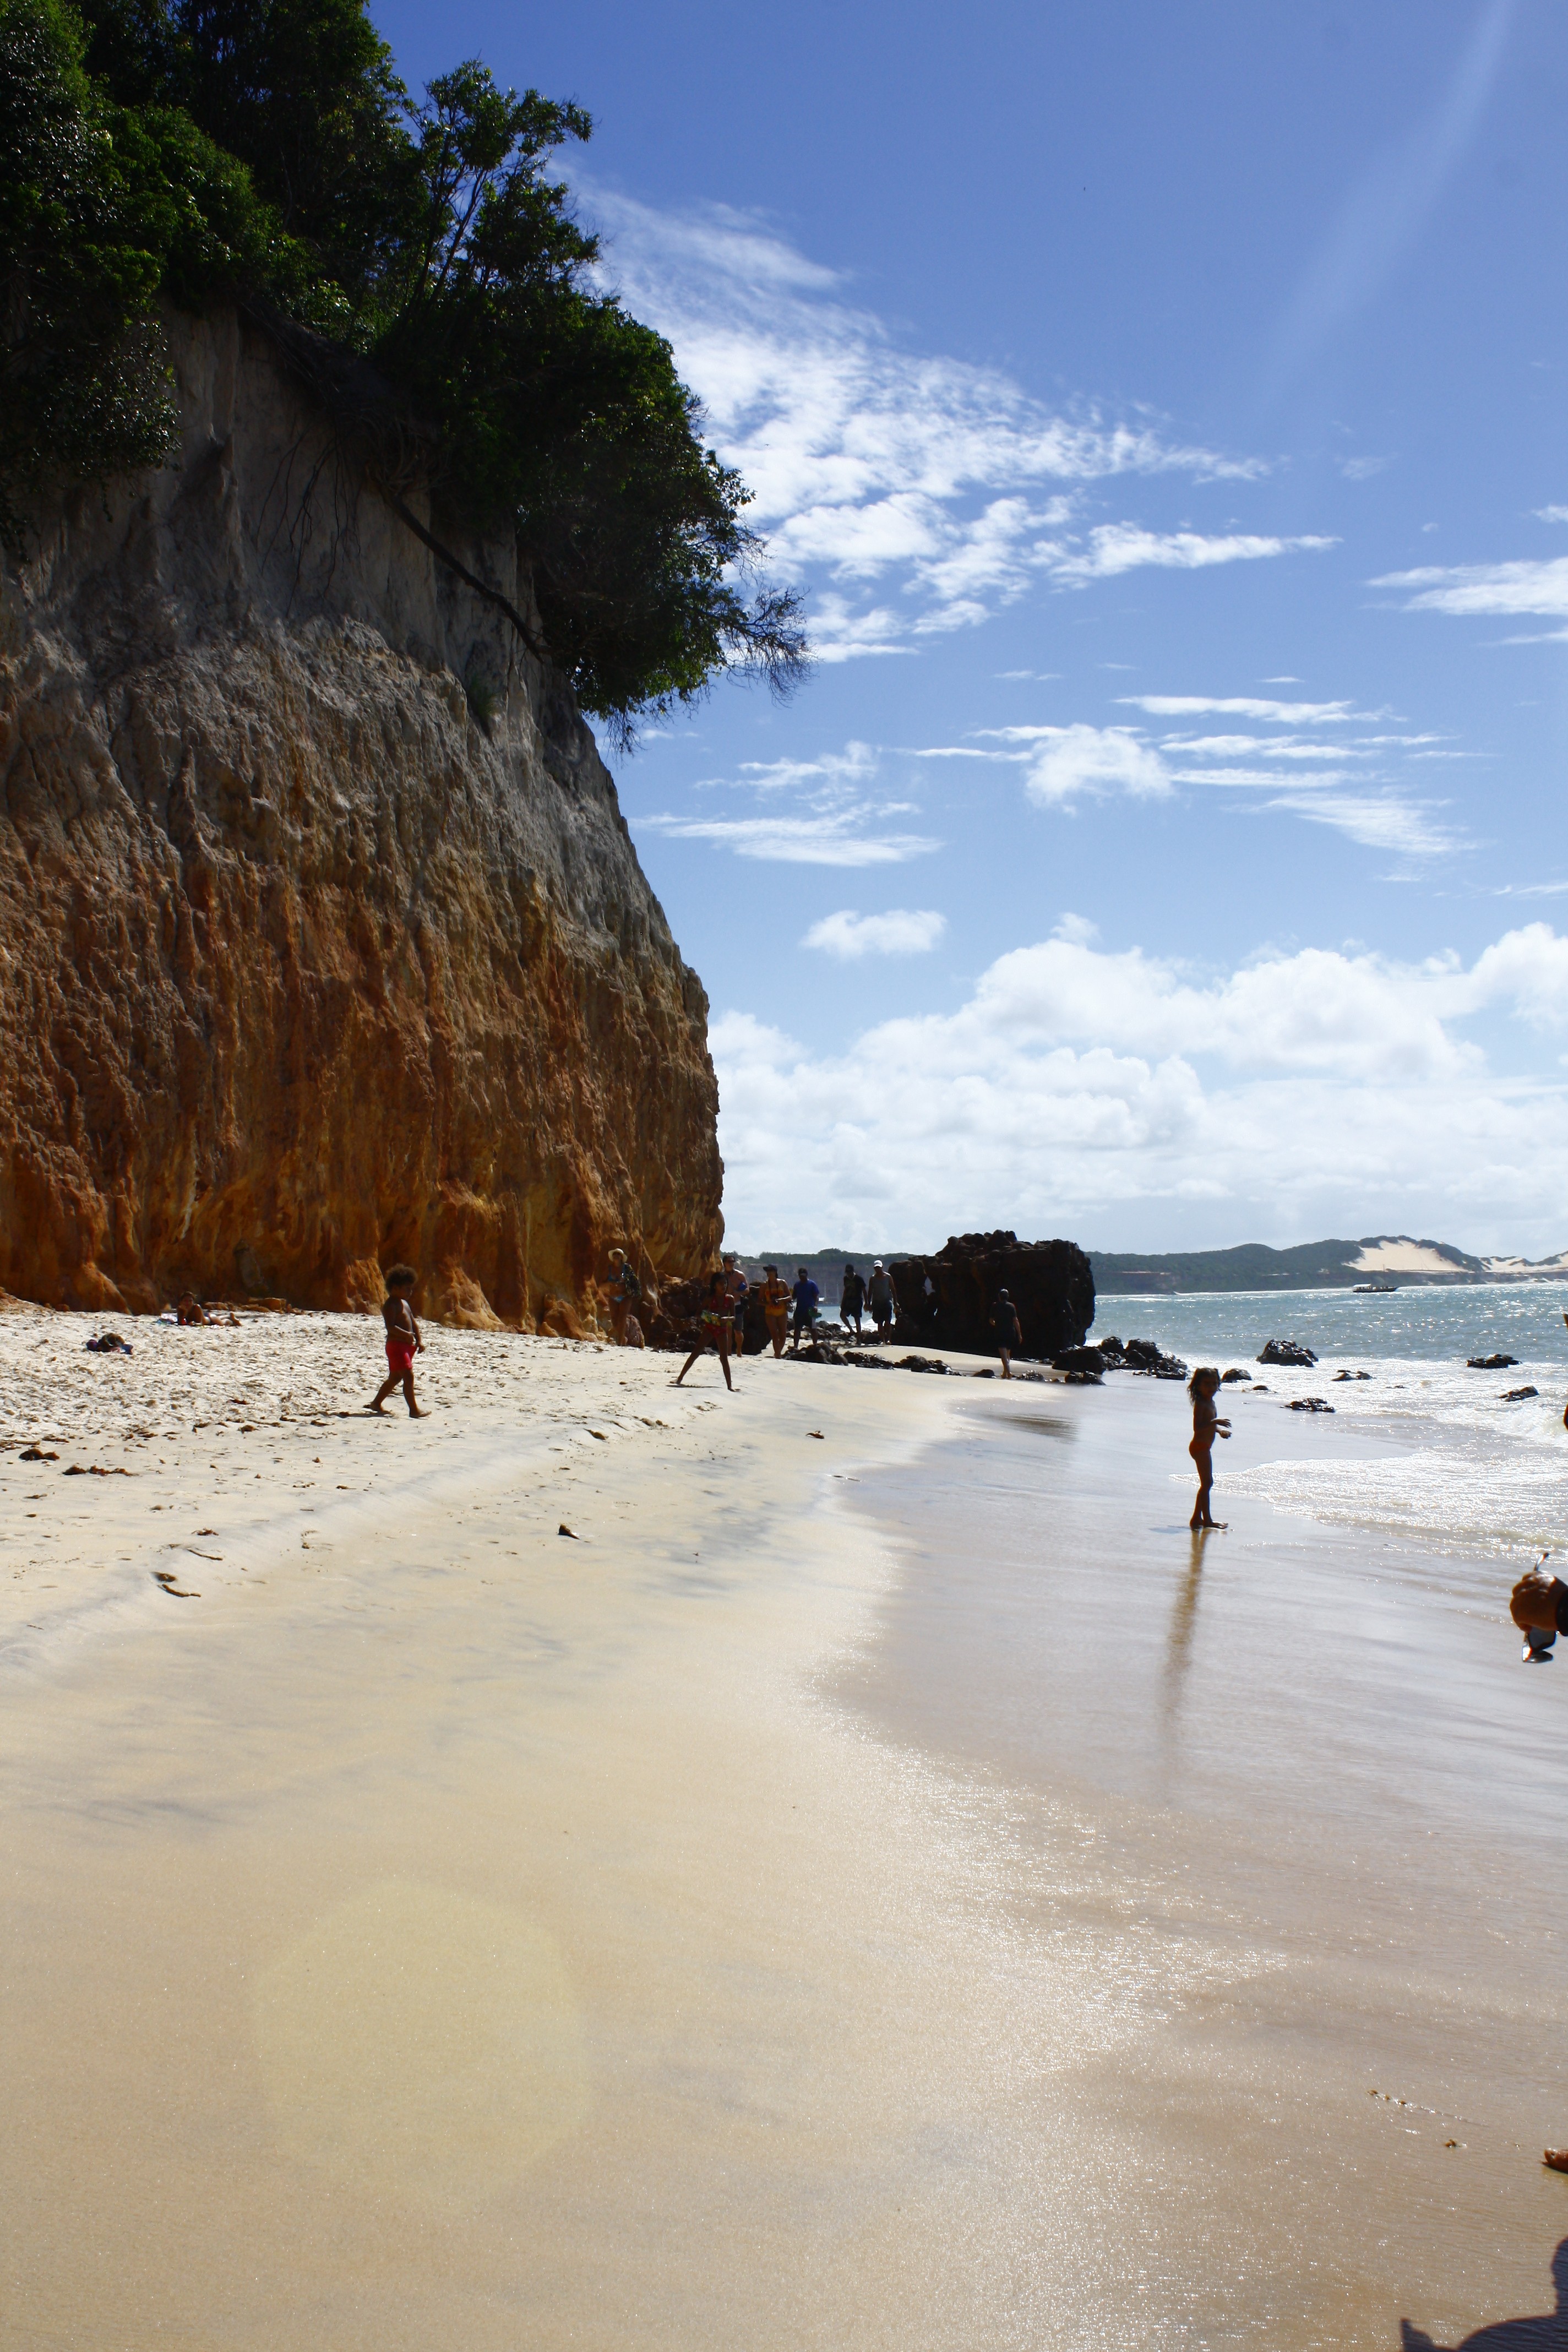 Praia da Pipa Cliffs, Brazil, Brazil News